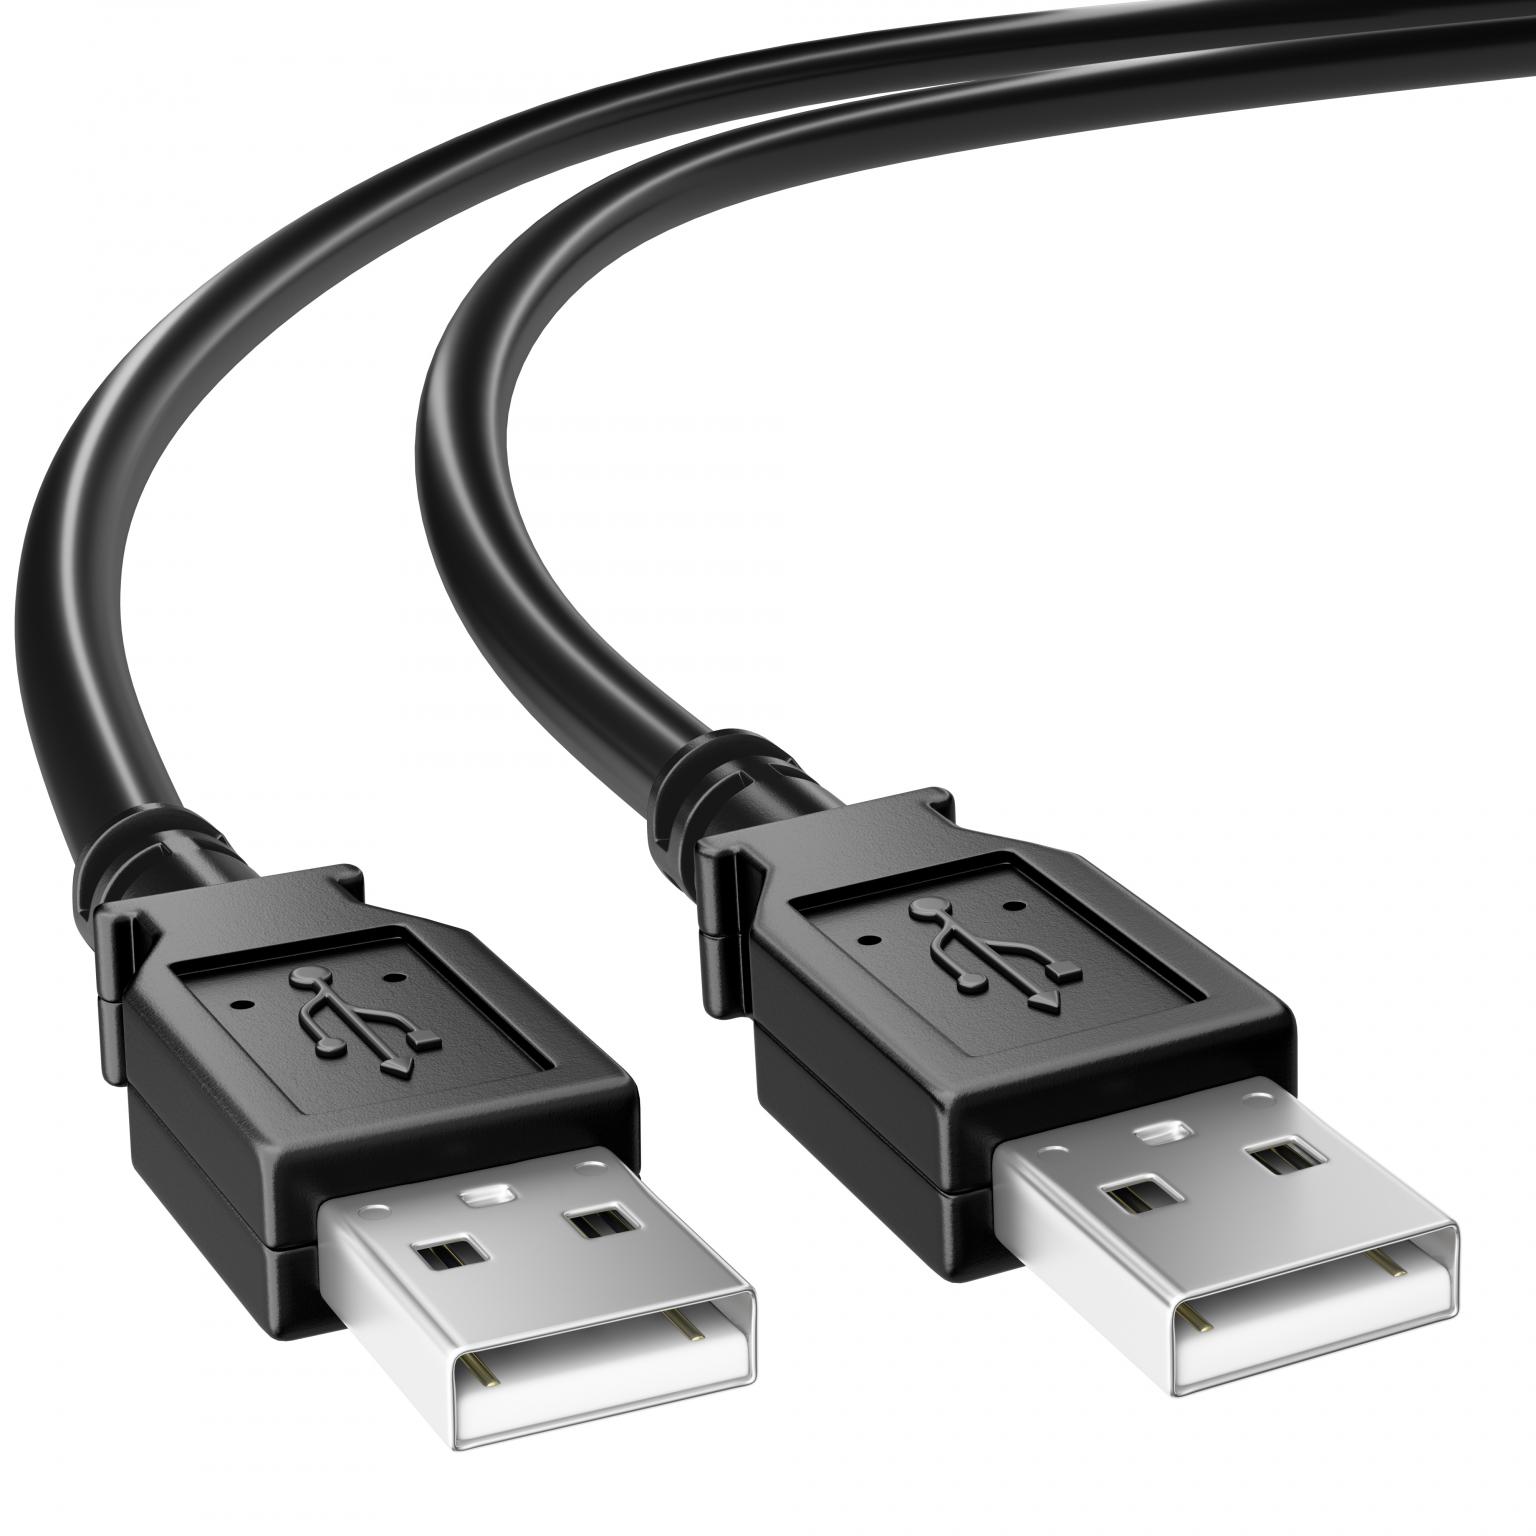 Rechtsaf Buigen Bliksem USB 2.0 Kabel - USB 2.0 kabel, Connector 1: USB A male, Connector 2: USB A  male, 3 meter.